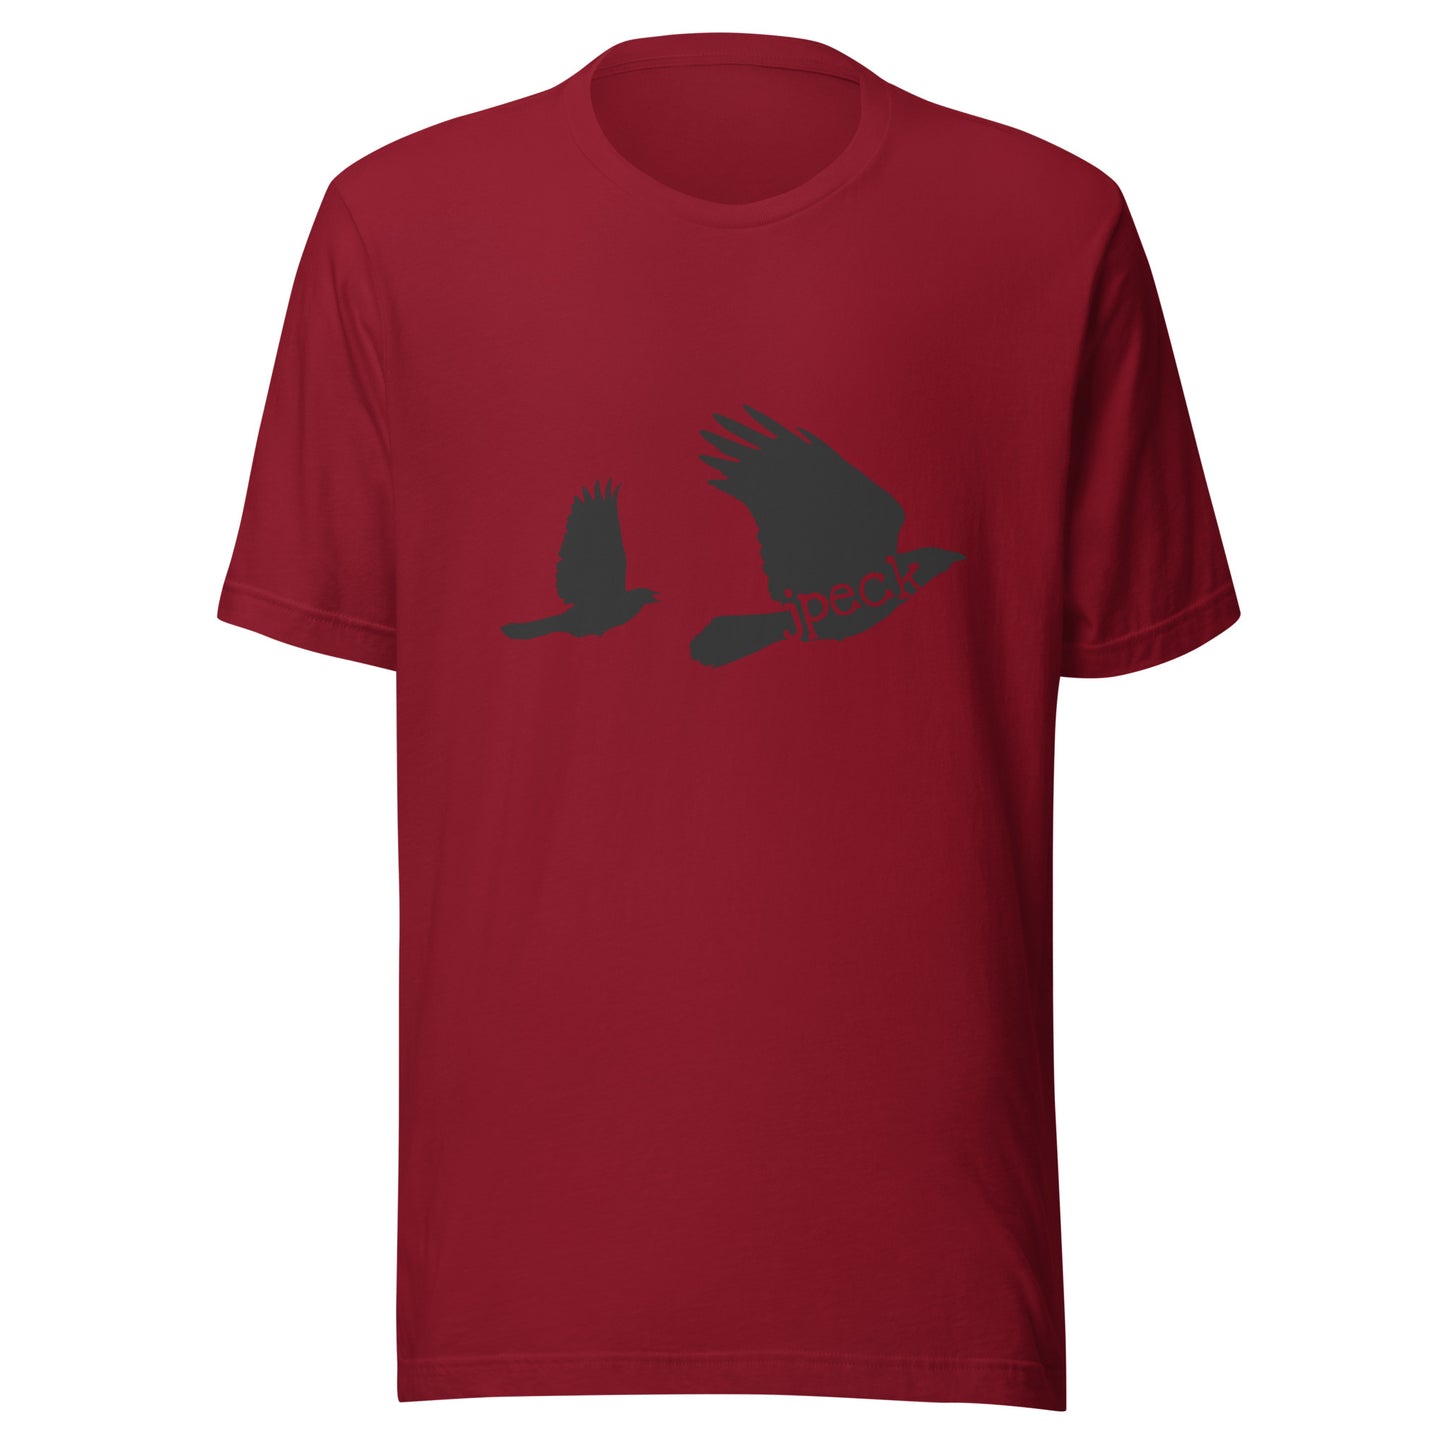 JPeck Blackbirds T-Shirt